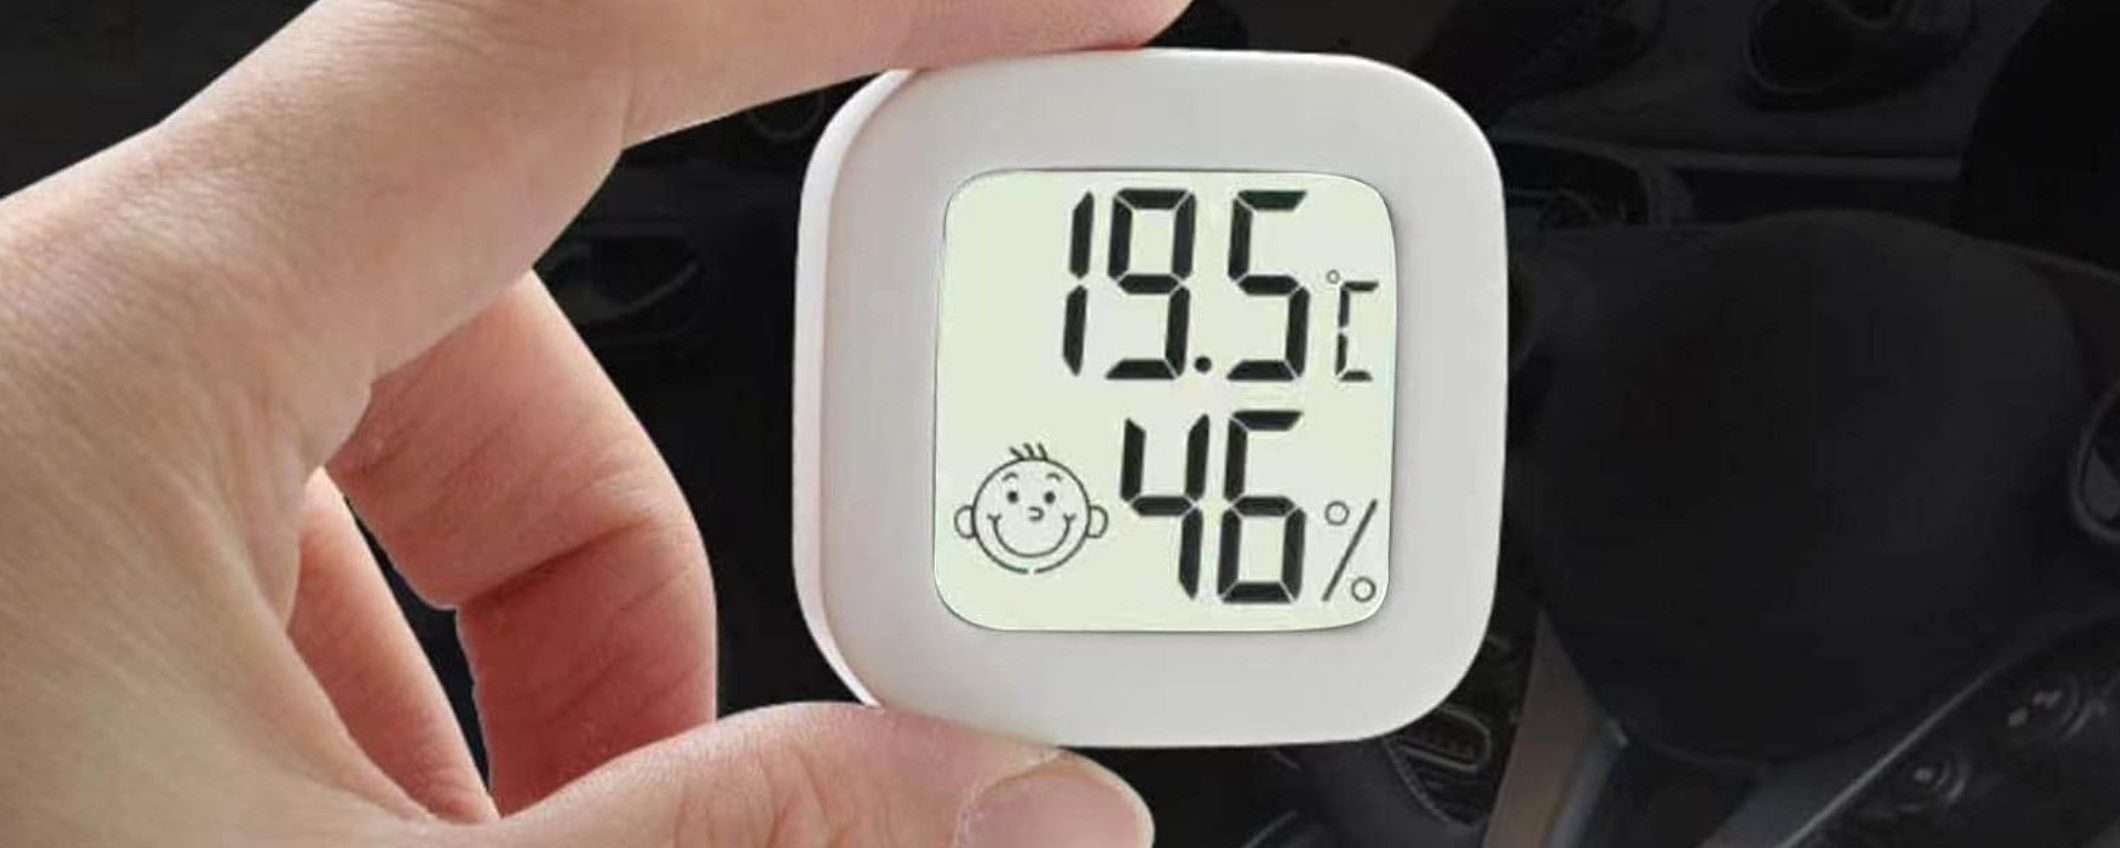 Termometro igrometro a 2,16€: super PRECISO e con display, prezzo SHOCK